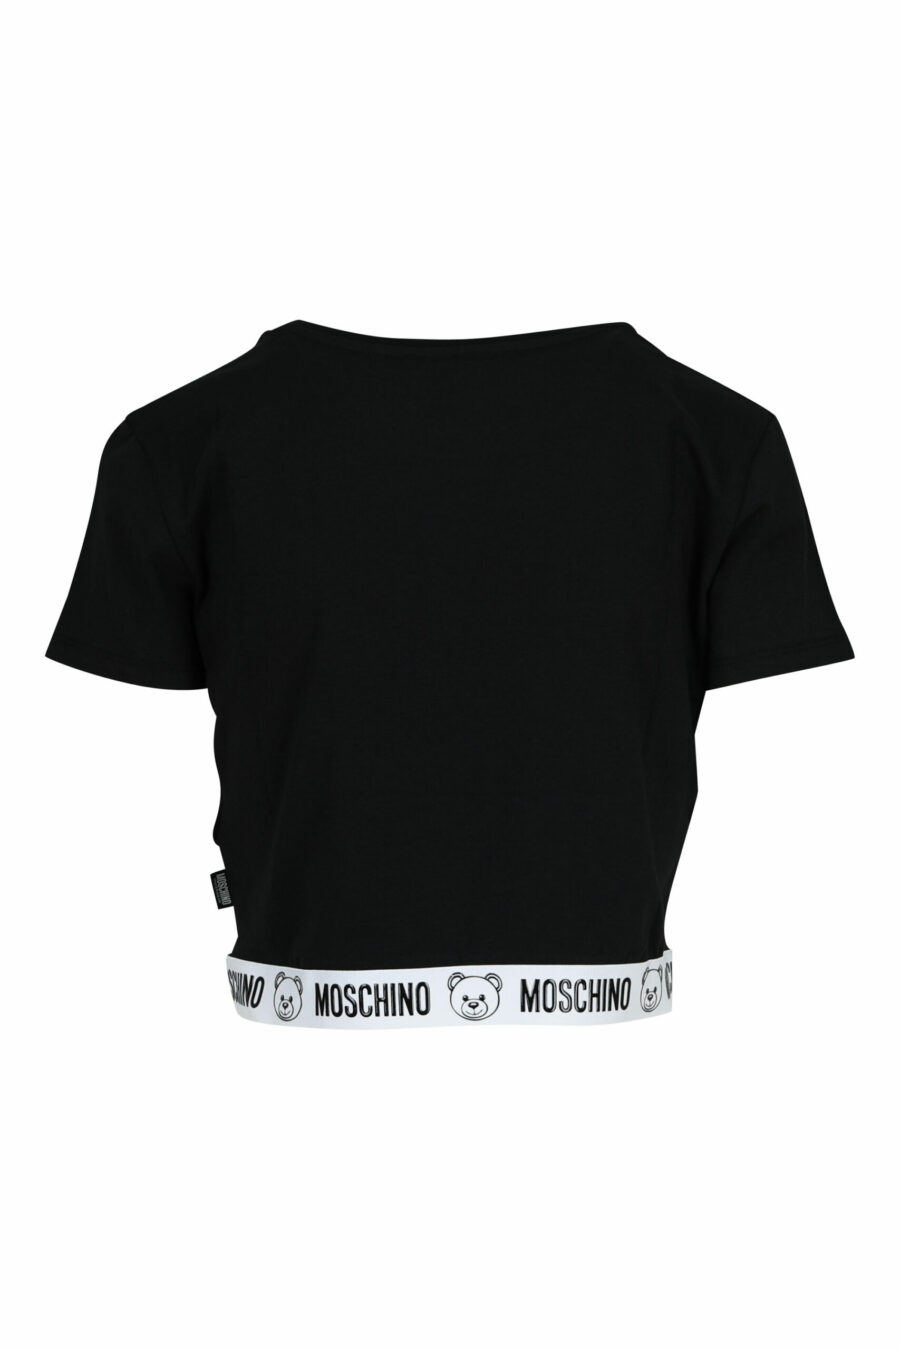 Camiseta negra corta con logo oso en cinta blanco - 667113355283 1 scaled